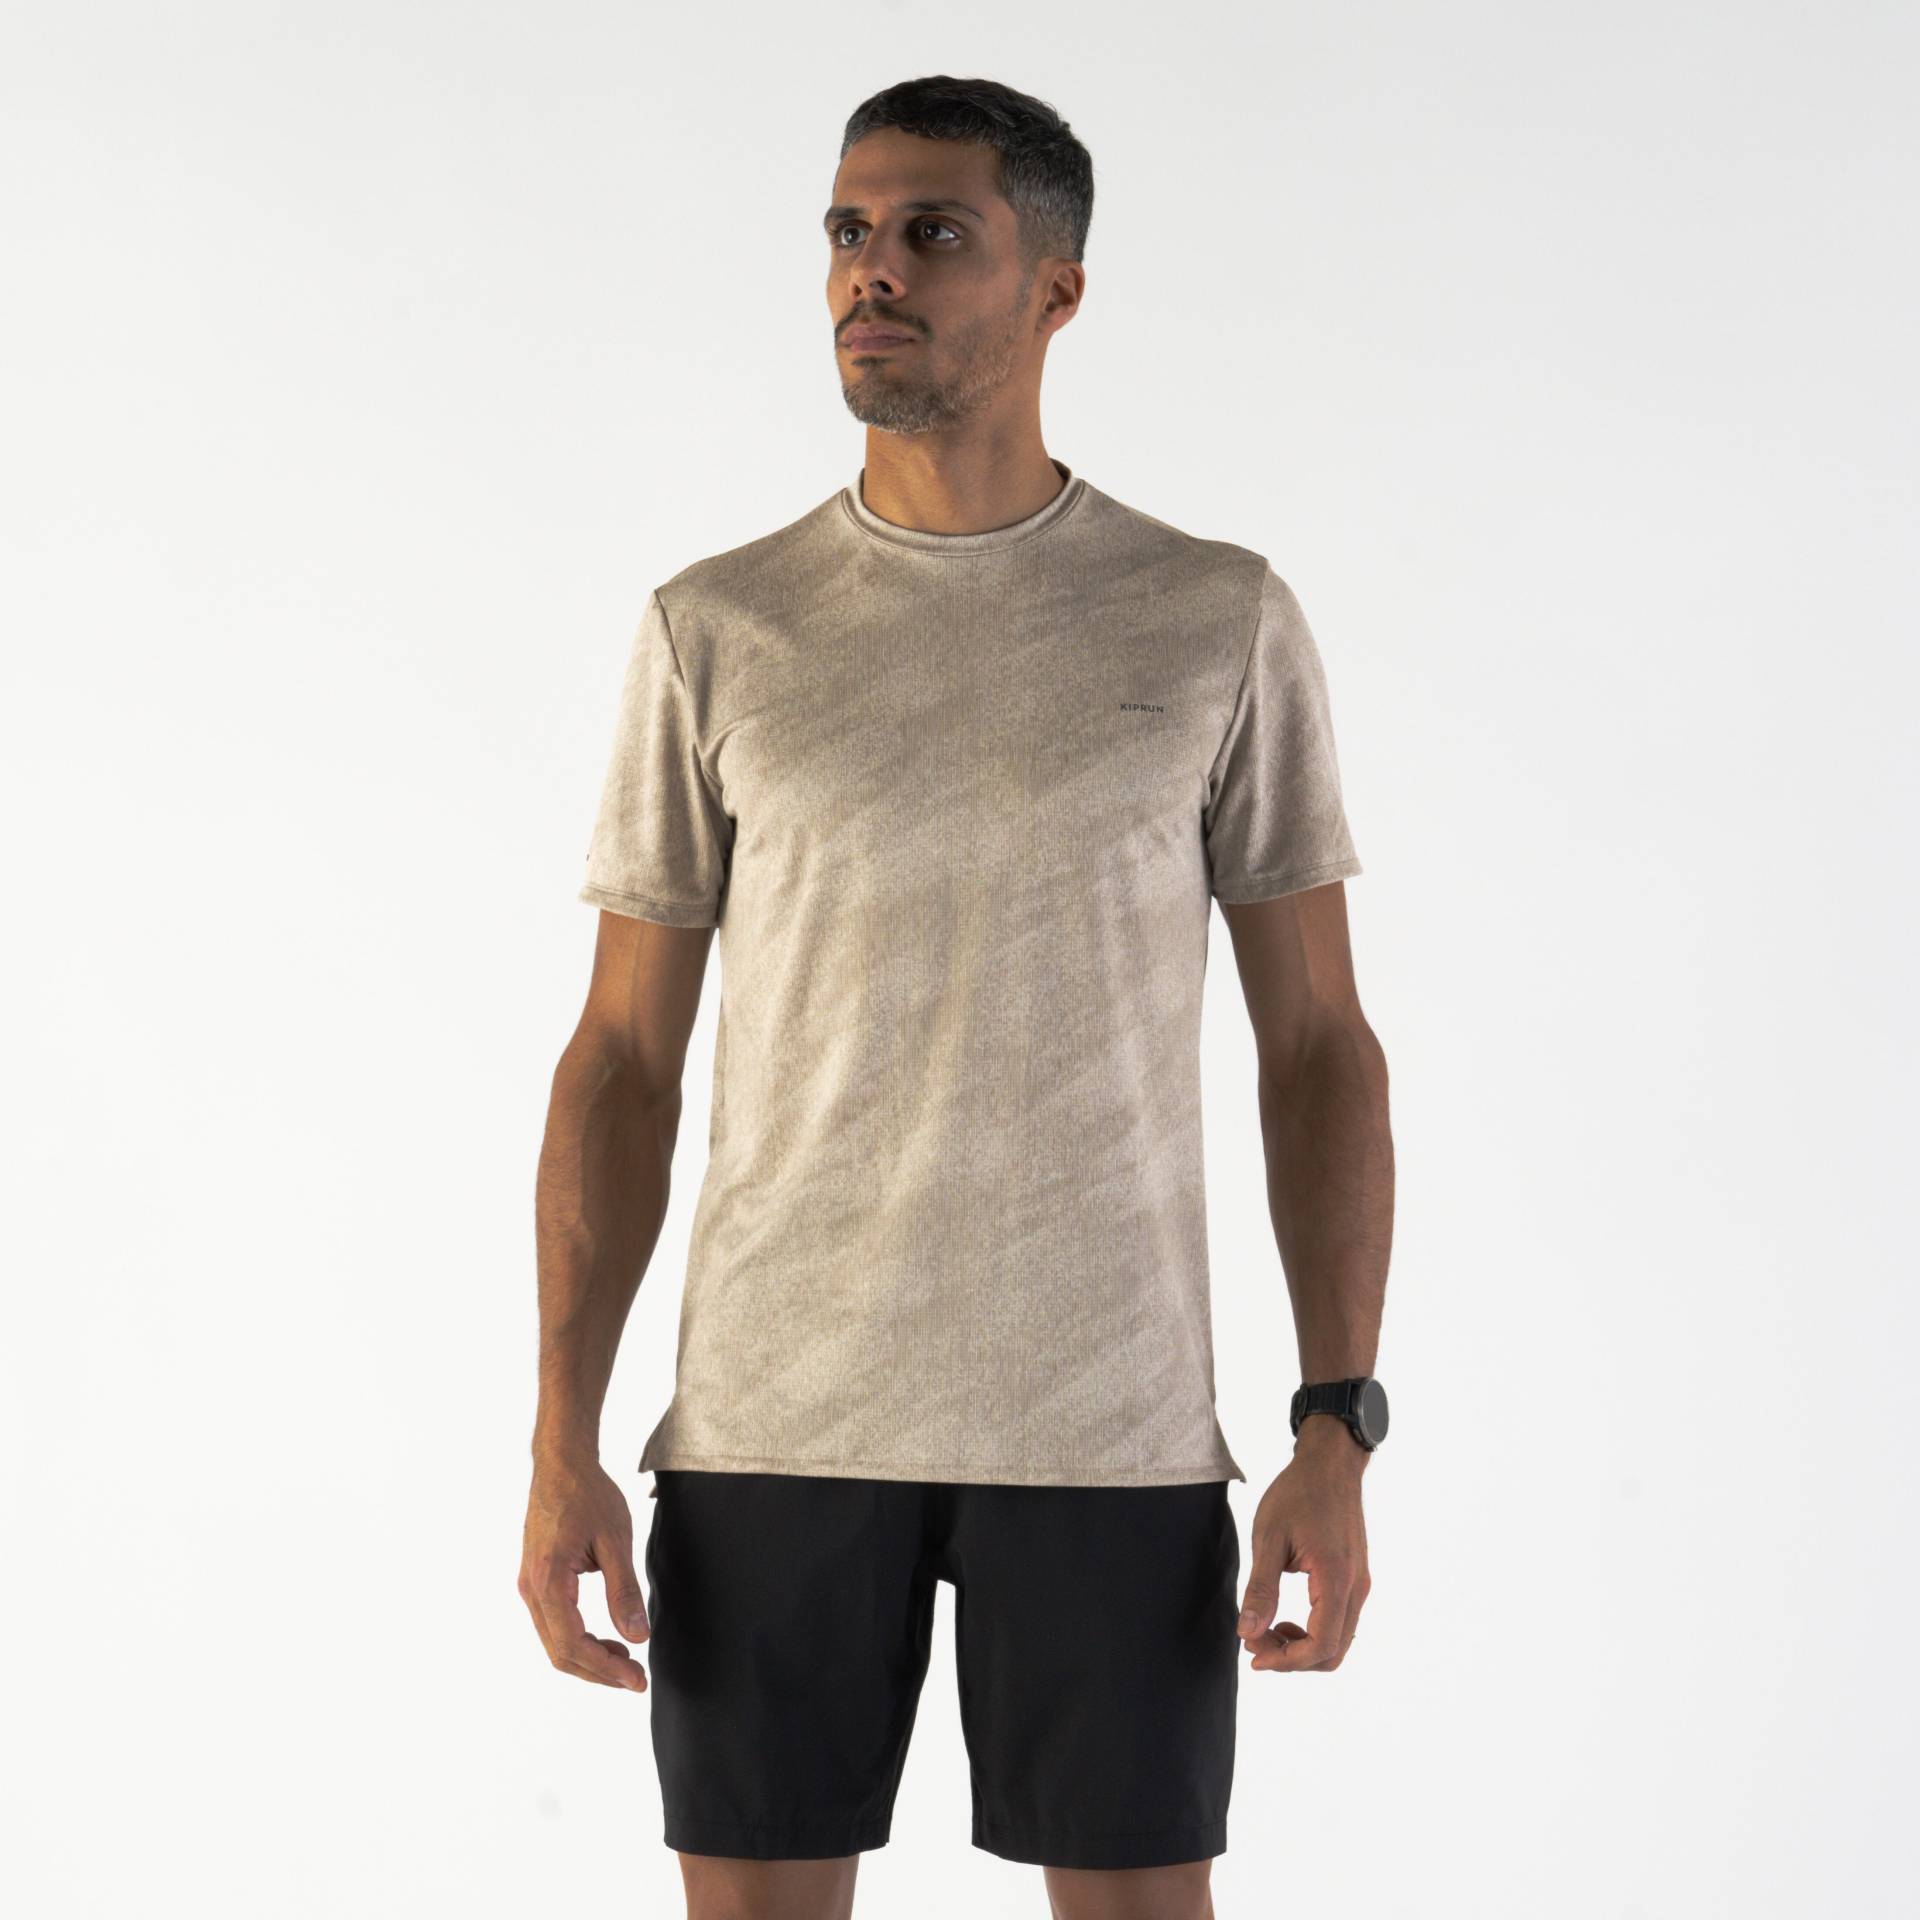 Laufshirt Herren kurzarm atmungsaktiv - Run 500 Dry beige mit Grafikprint von Kiprun